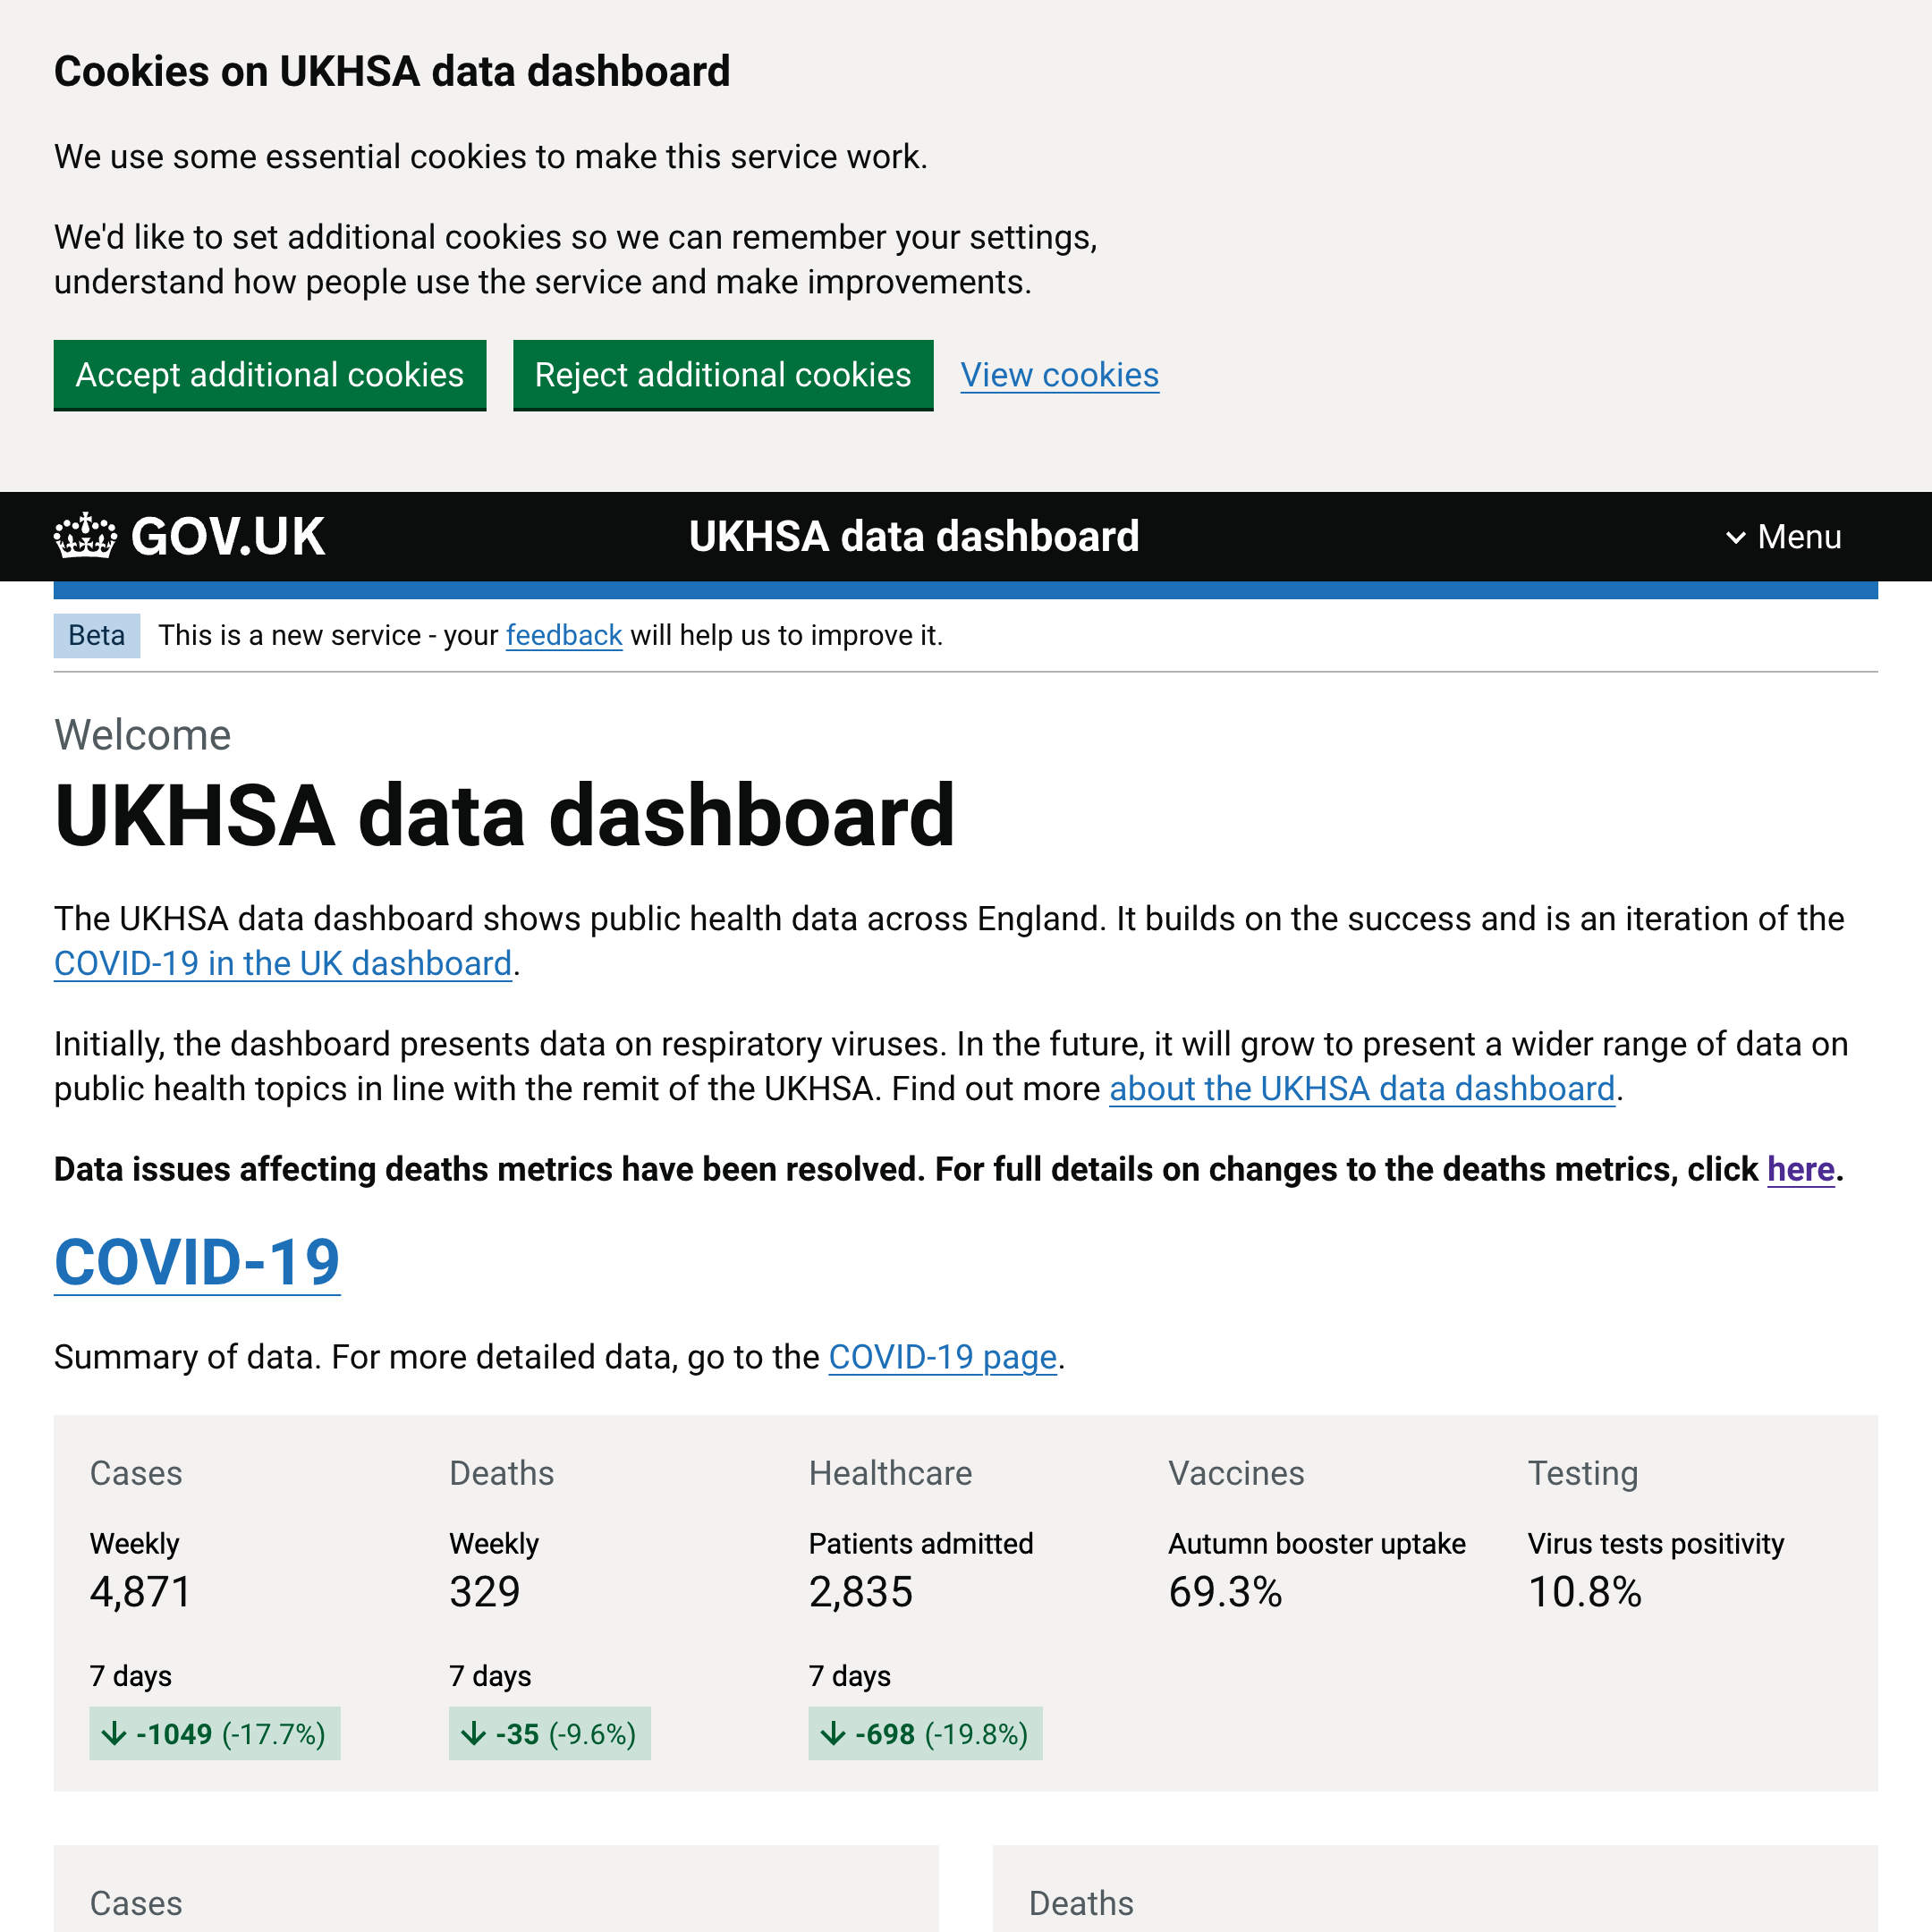 UKHSA data dashboard